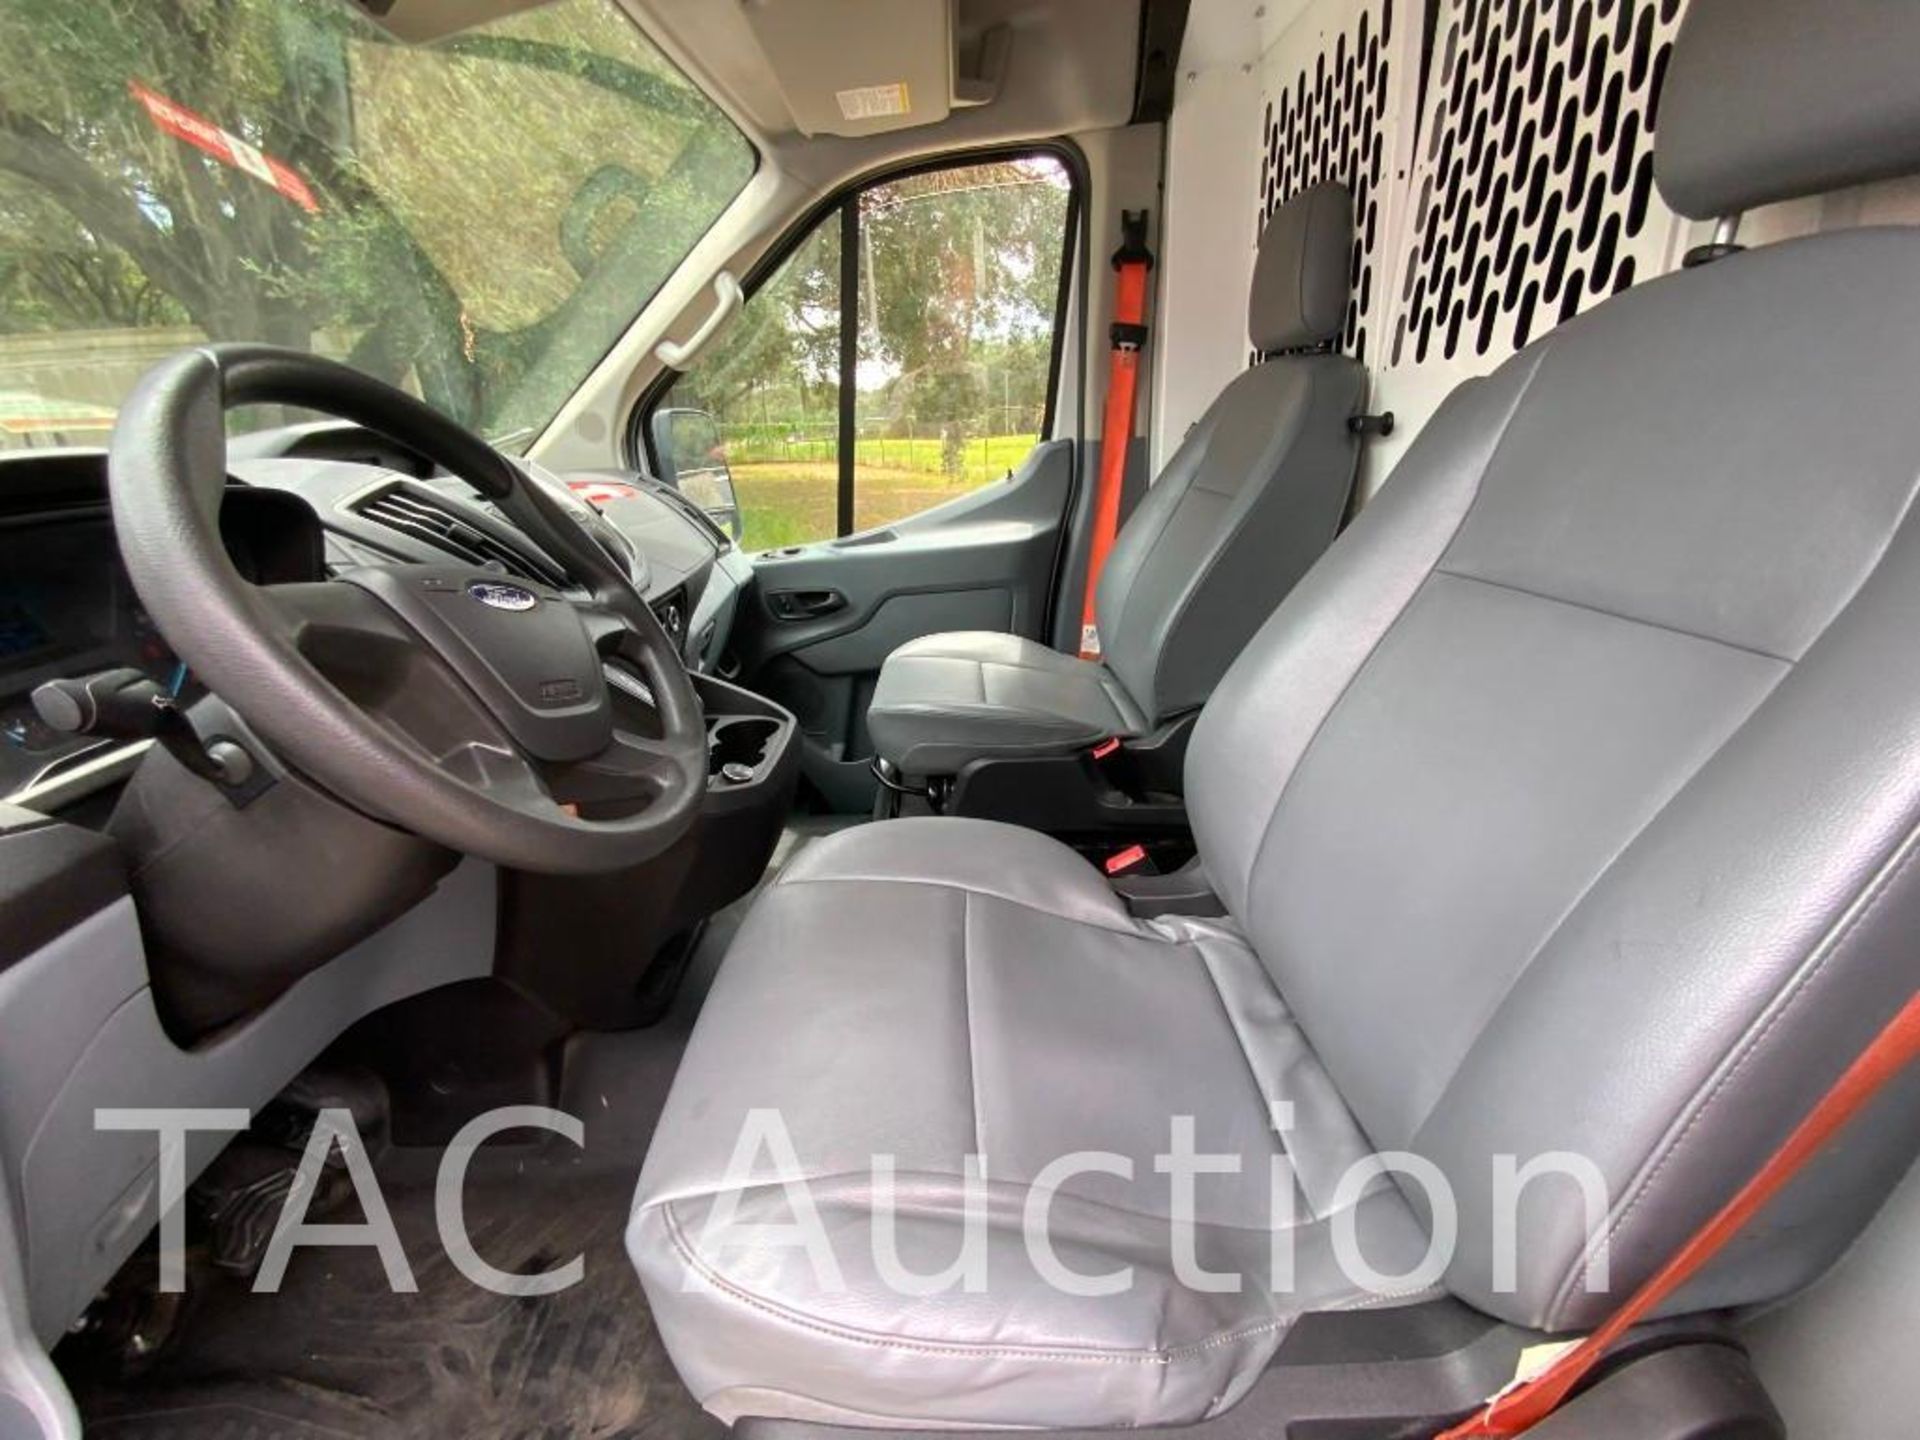 2019 Ford Transit 150 Cargo Van - Image 10 of 54